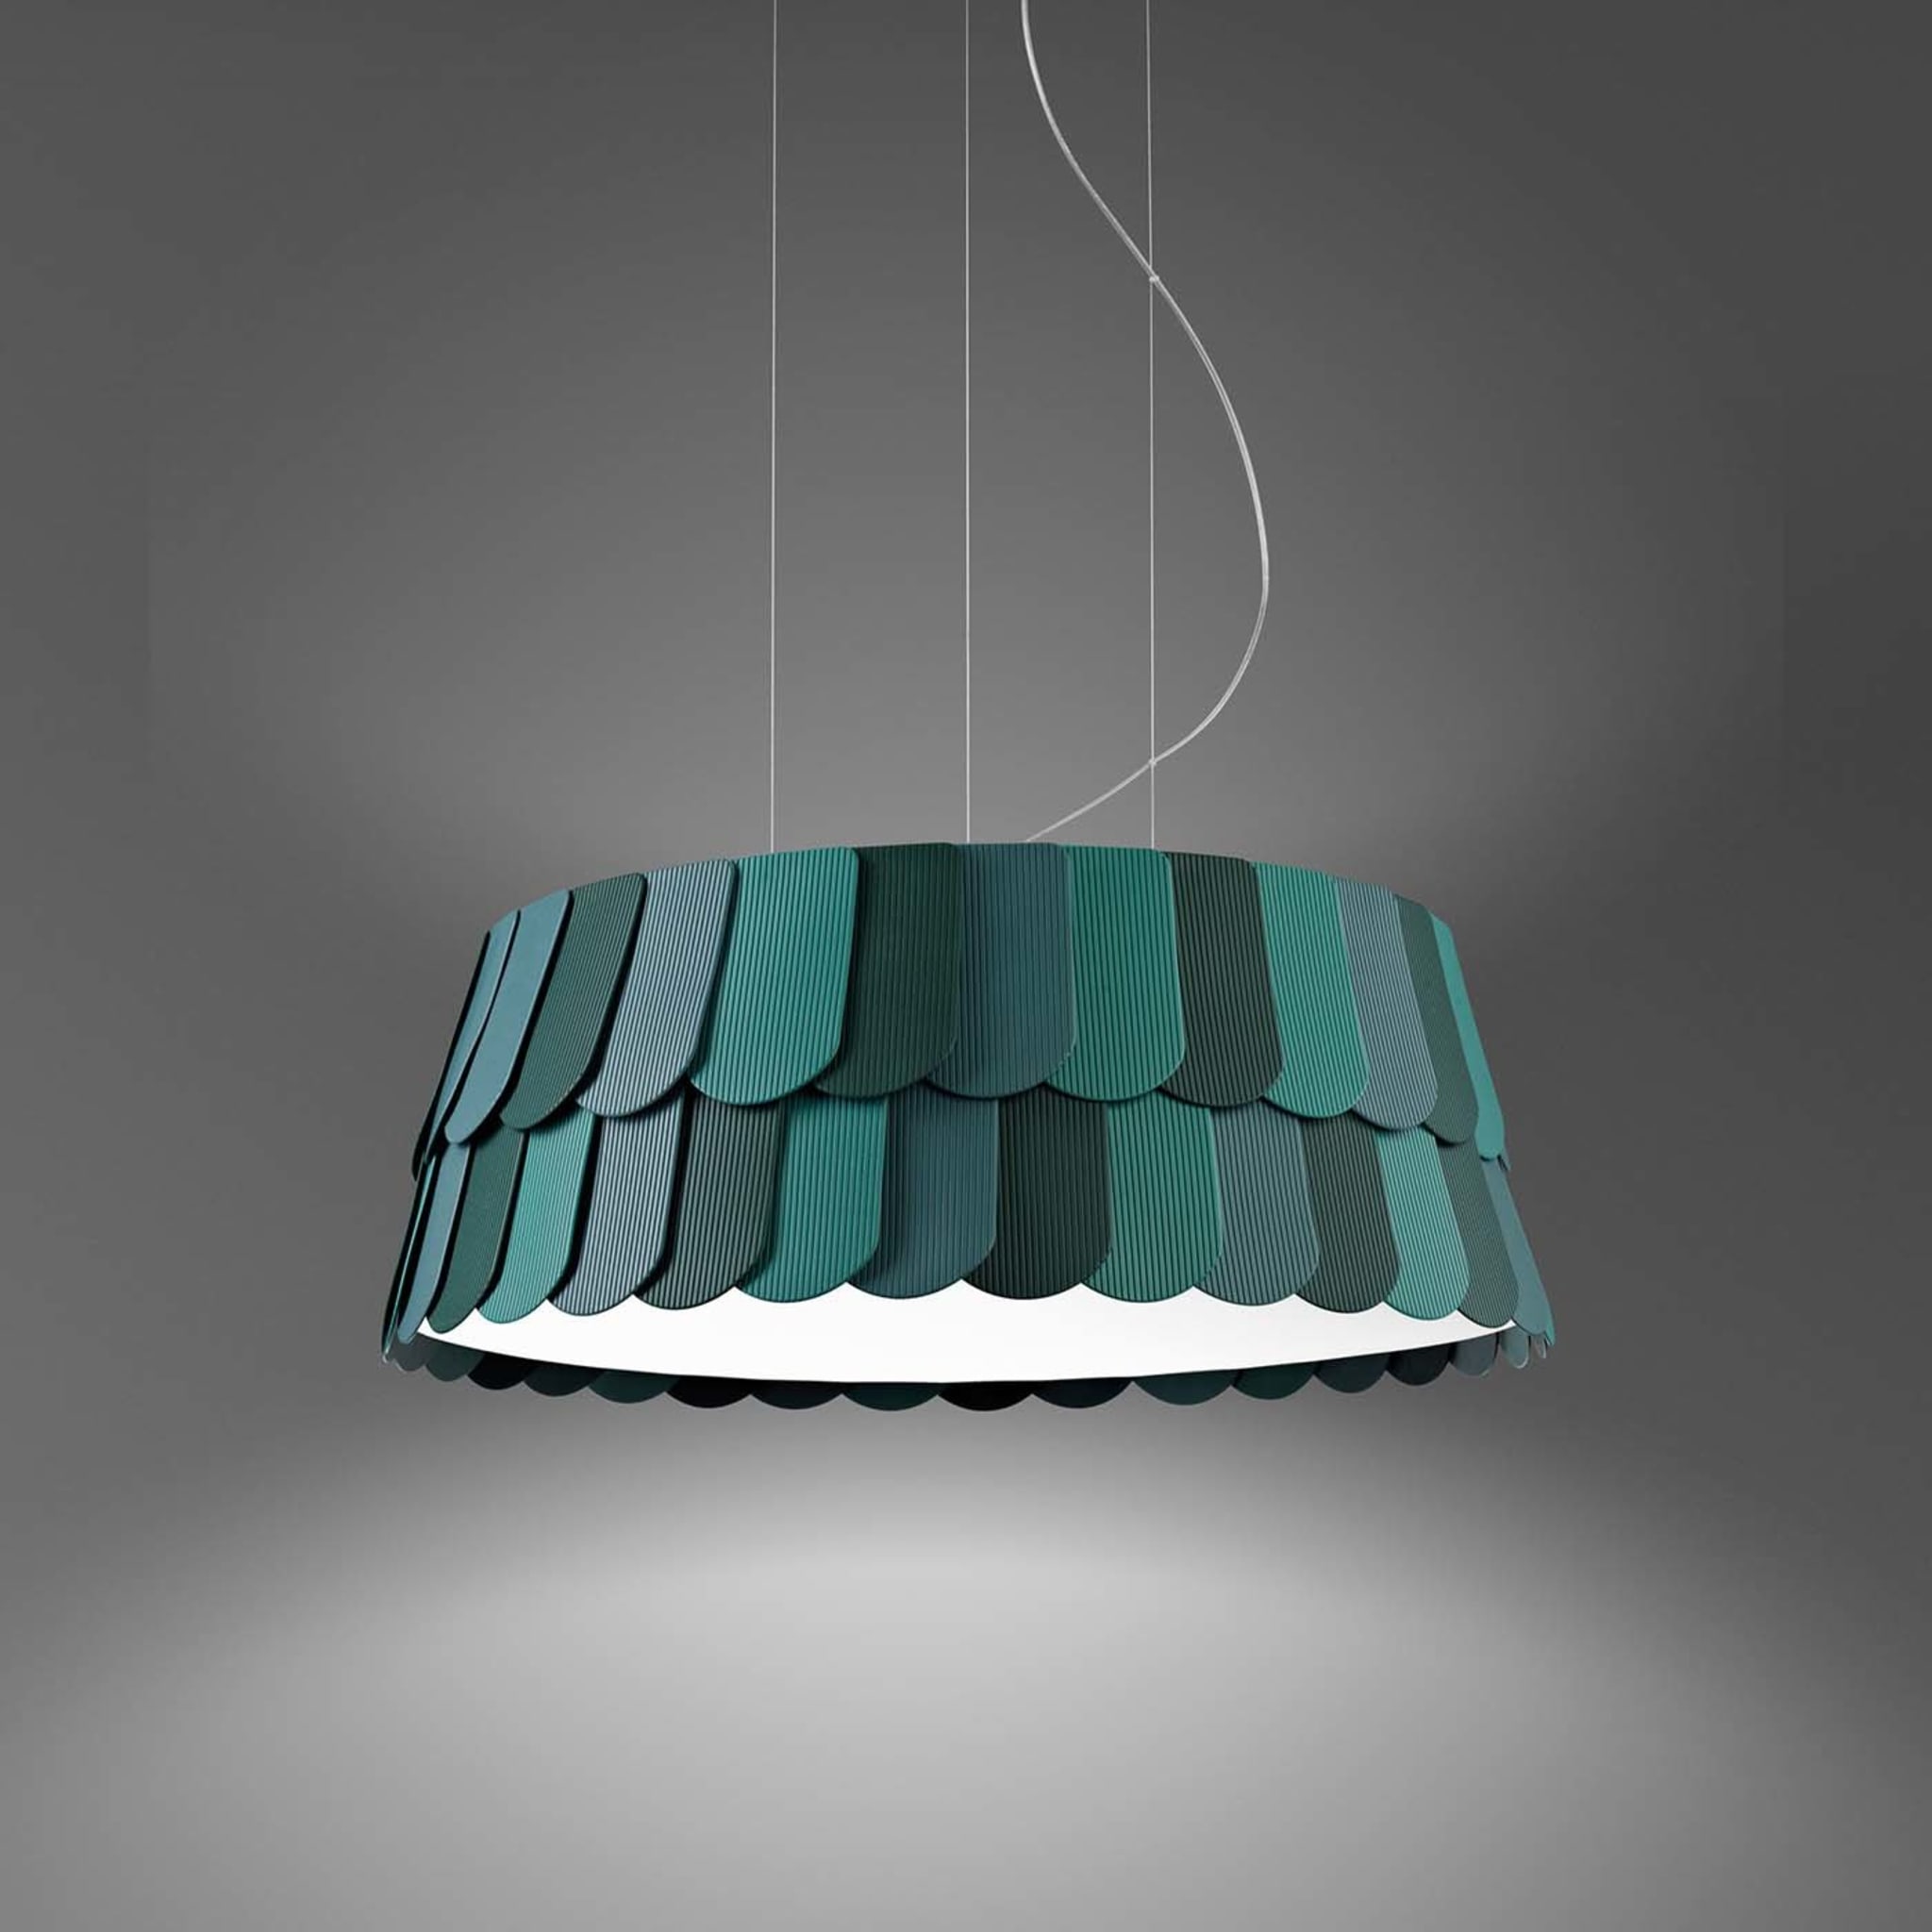 Lampe suspendue Roofer Green de Benjamin Hubert - Vue alternative 1